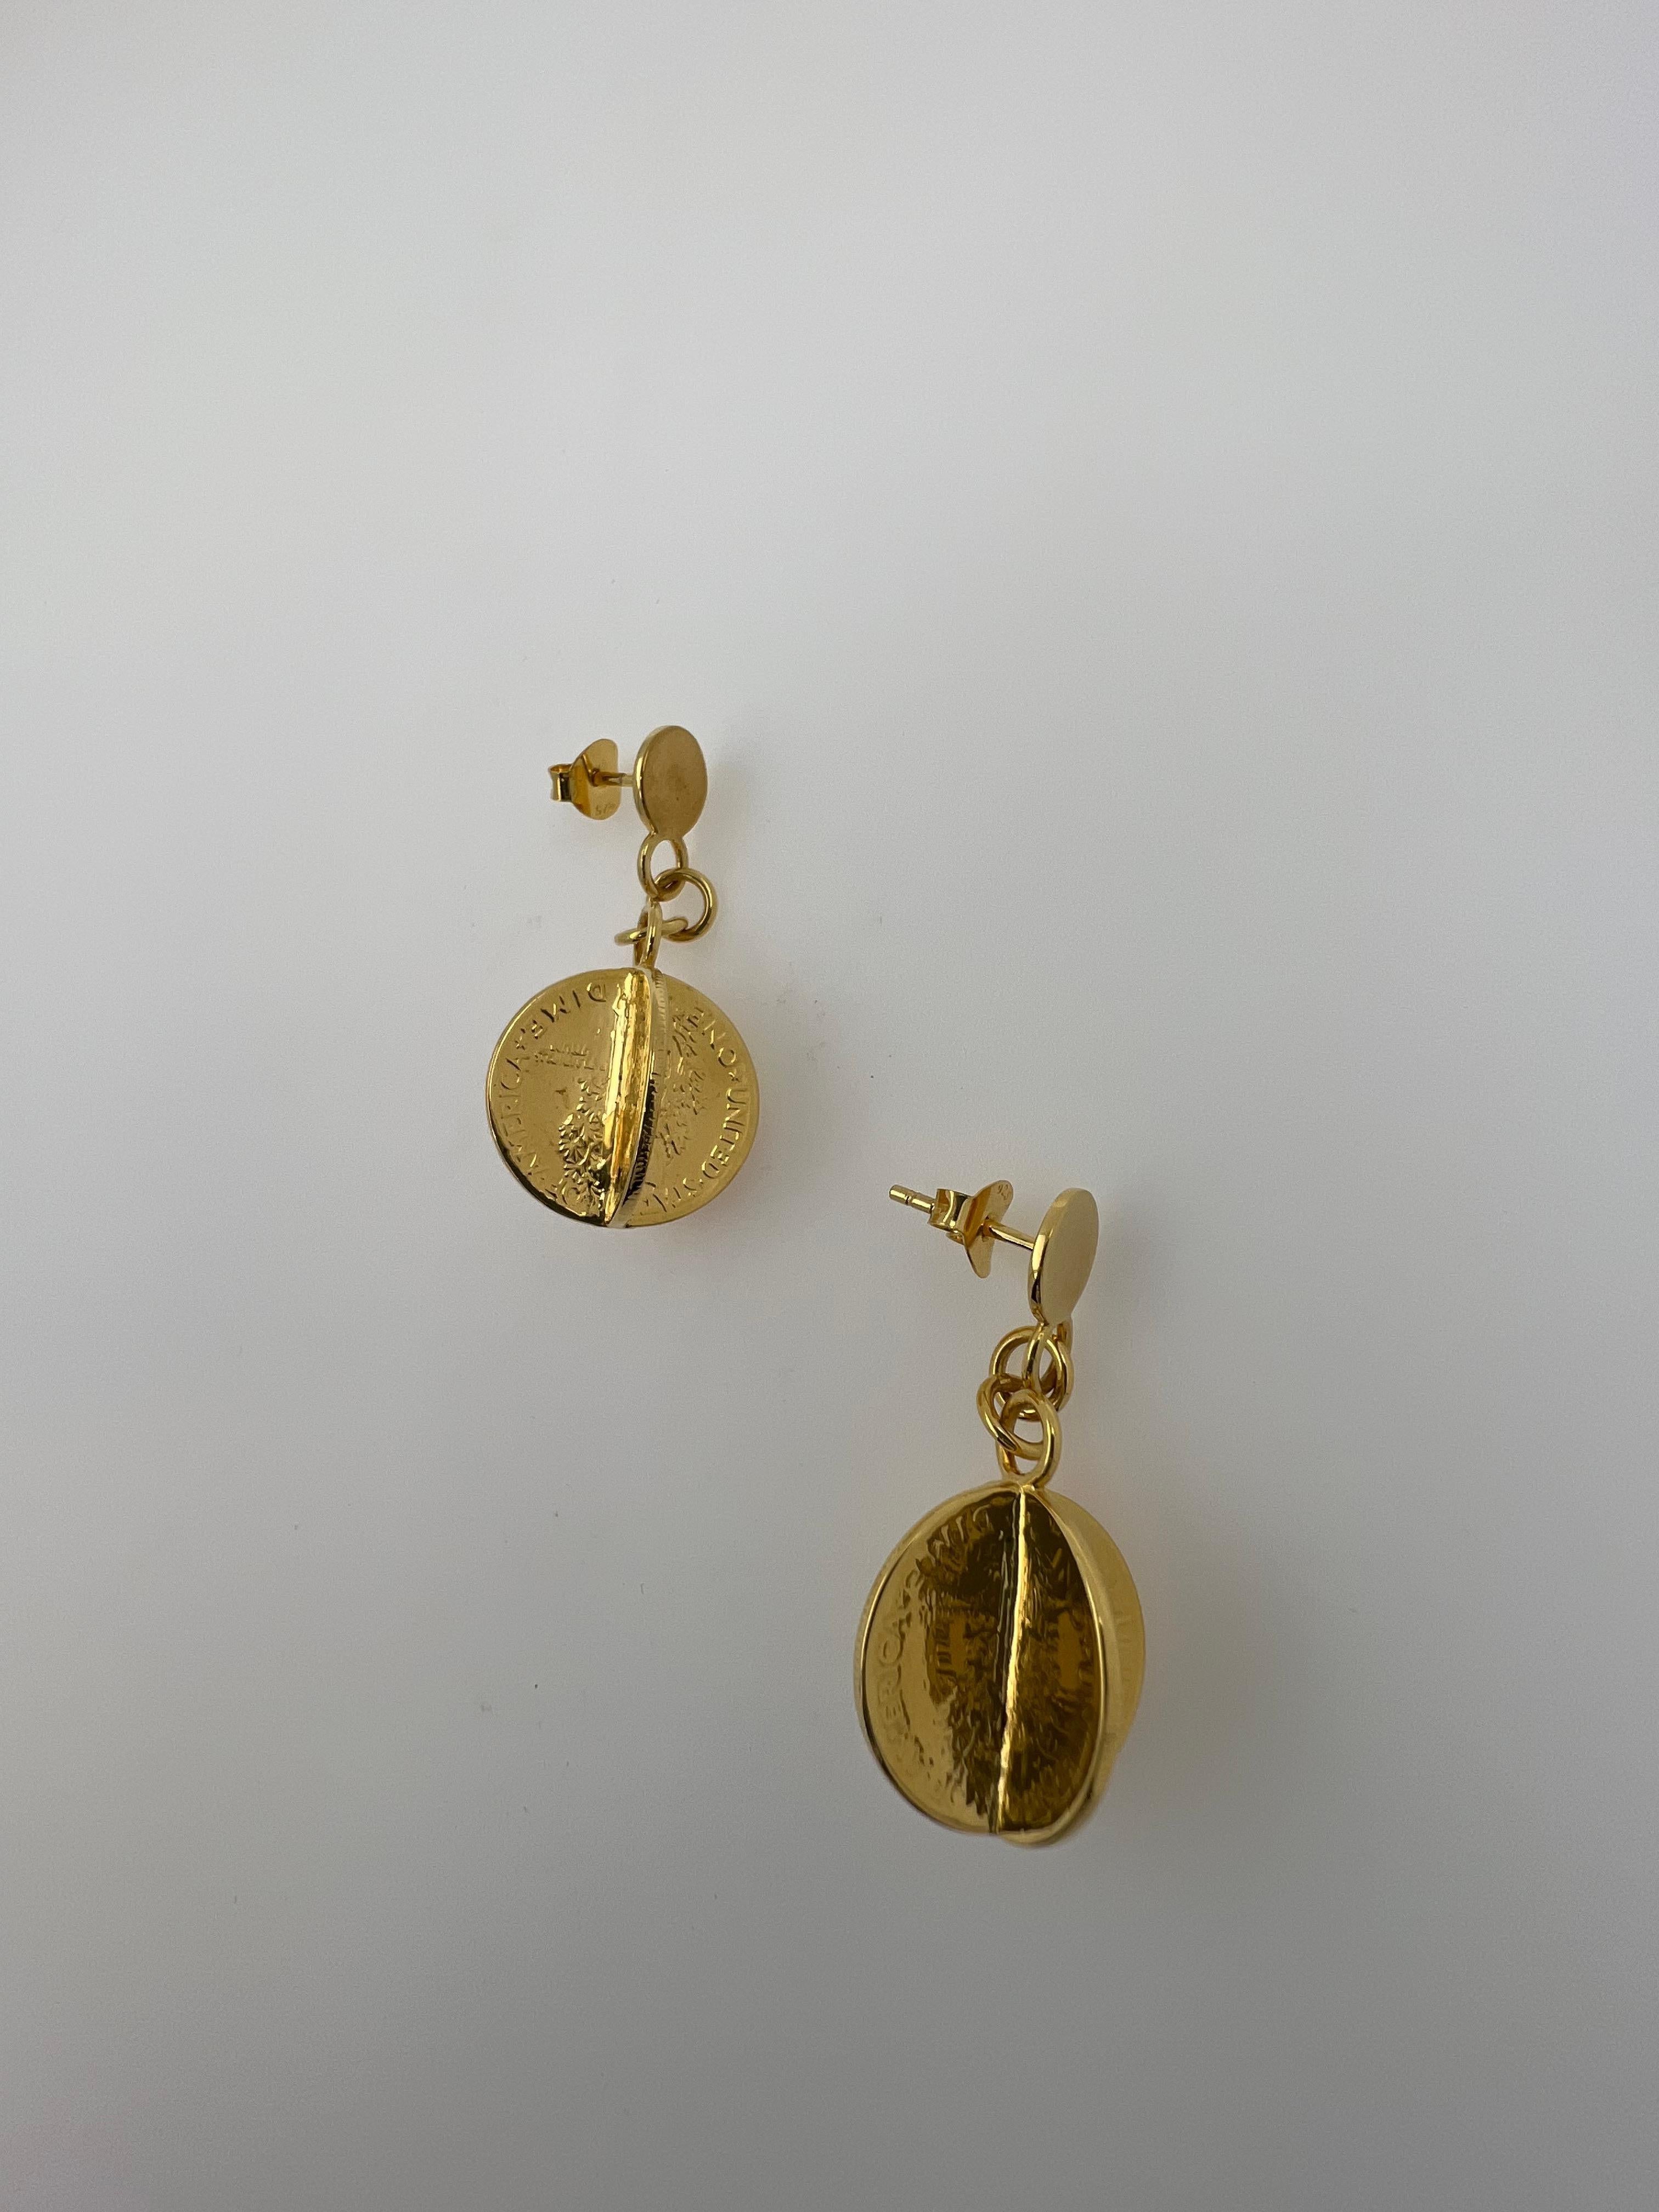 dollar earrings gold